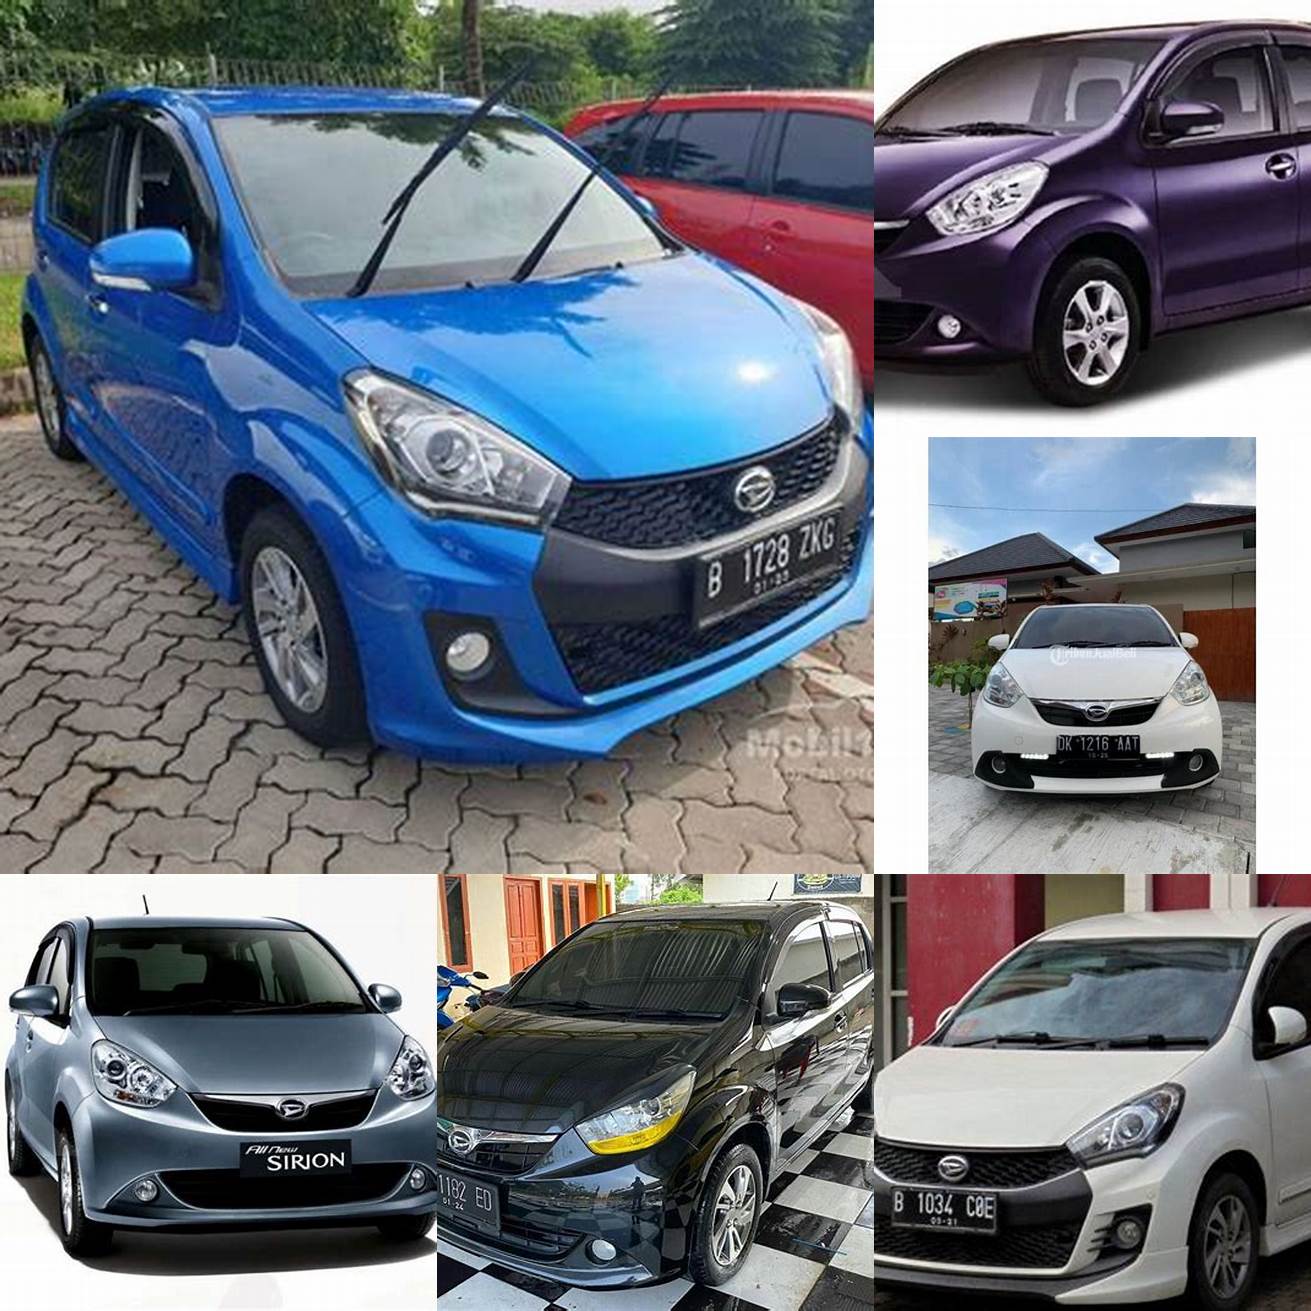 Harga mobil Sirion bekas tahun 2014 - 2016 berkisar antara 120 - 150 juta rupiah